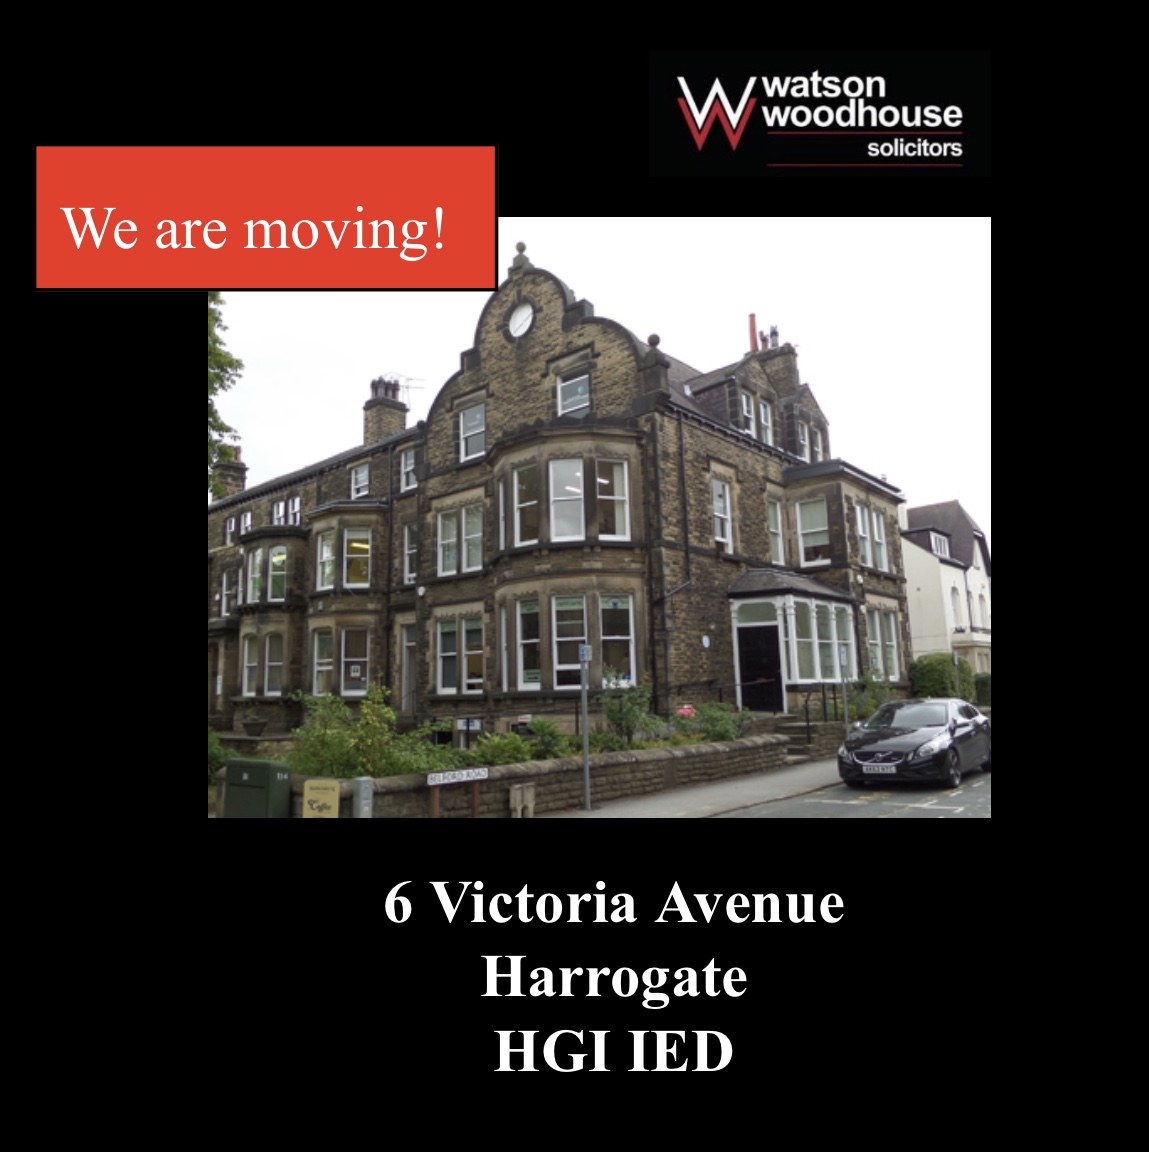 New Harrogate Office | Watson Woodhouse